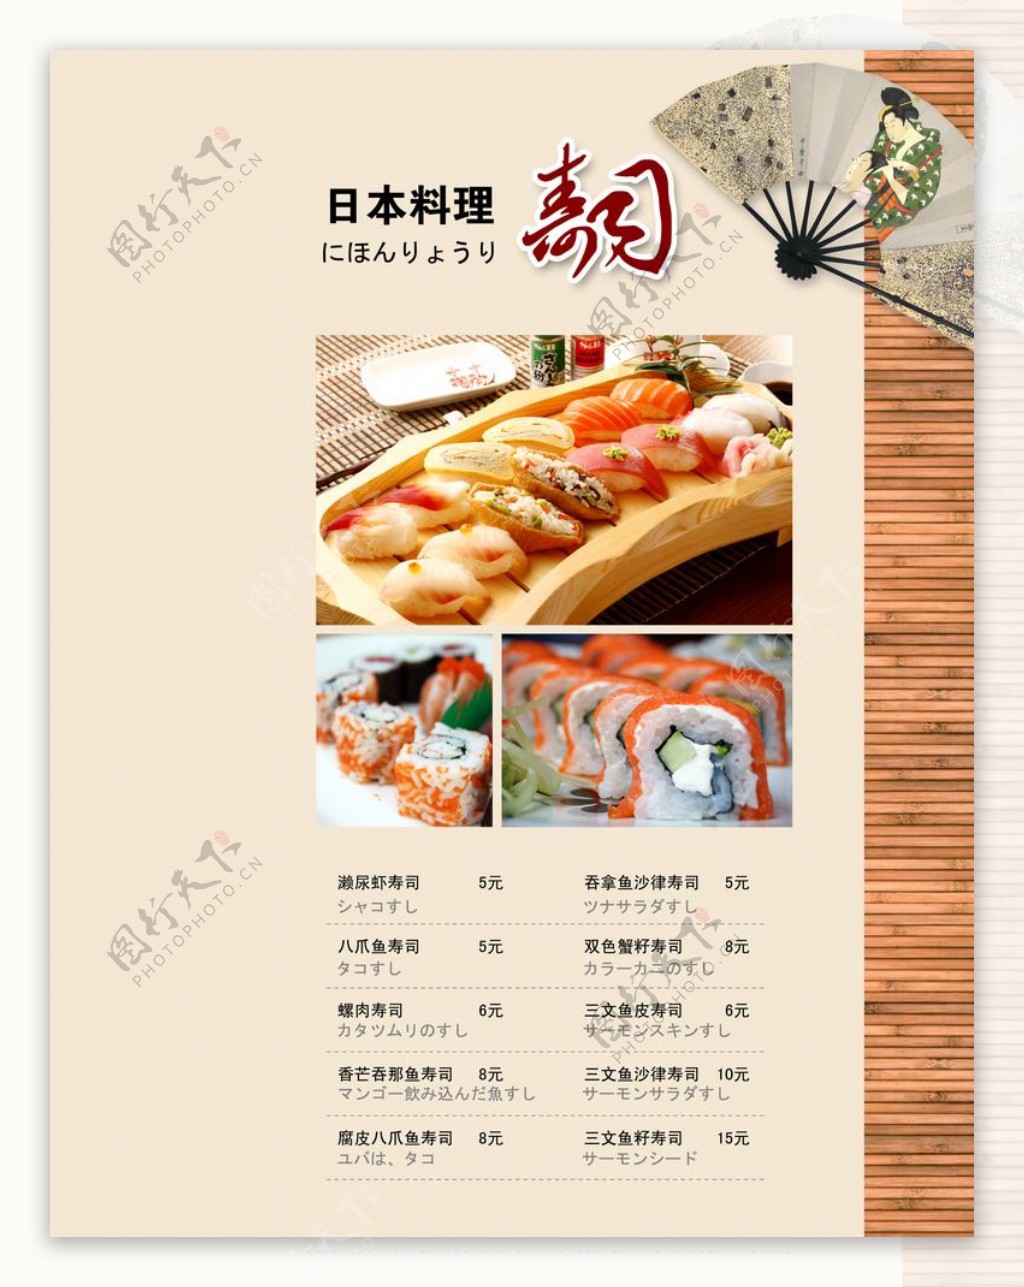 日式菜单图片